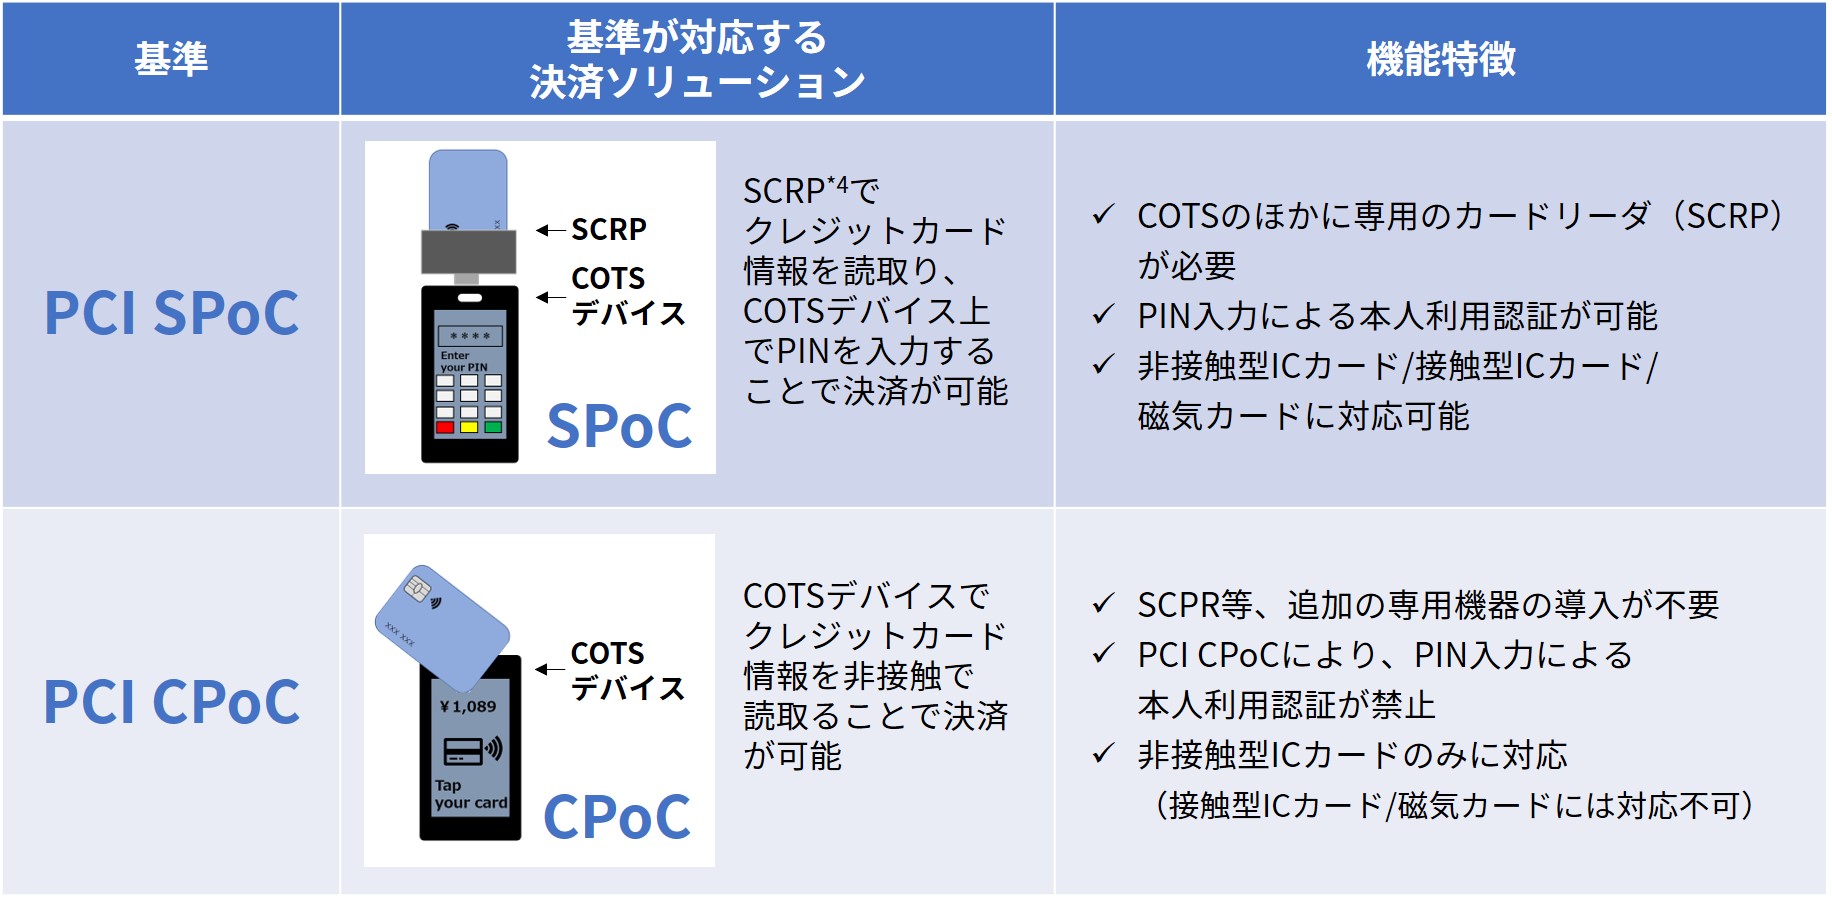 表5_PCI_SPoC_PCI CPoCに対応する決済ソリューションとその機能特徴